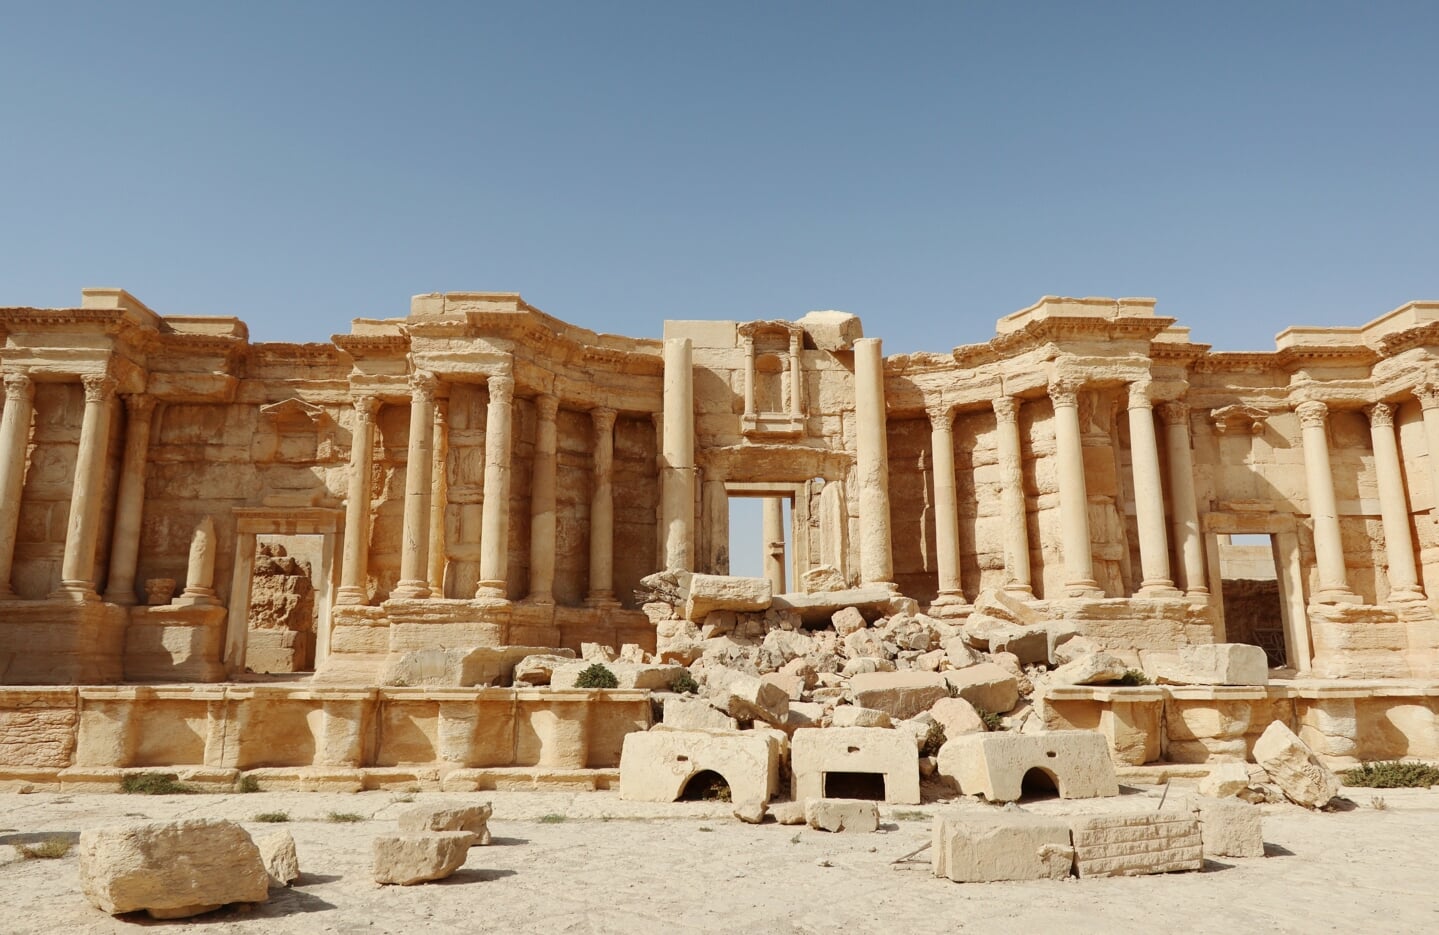 Het Romeinse Theater in mei dit jaar. Ook hier verwoestte ISIS veel.